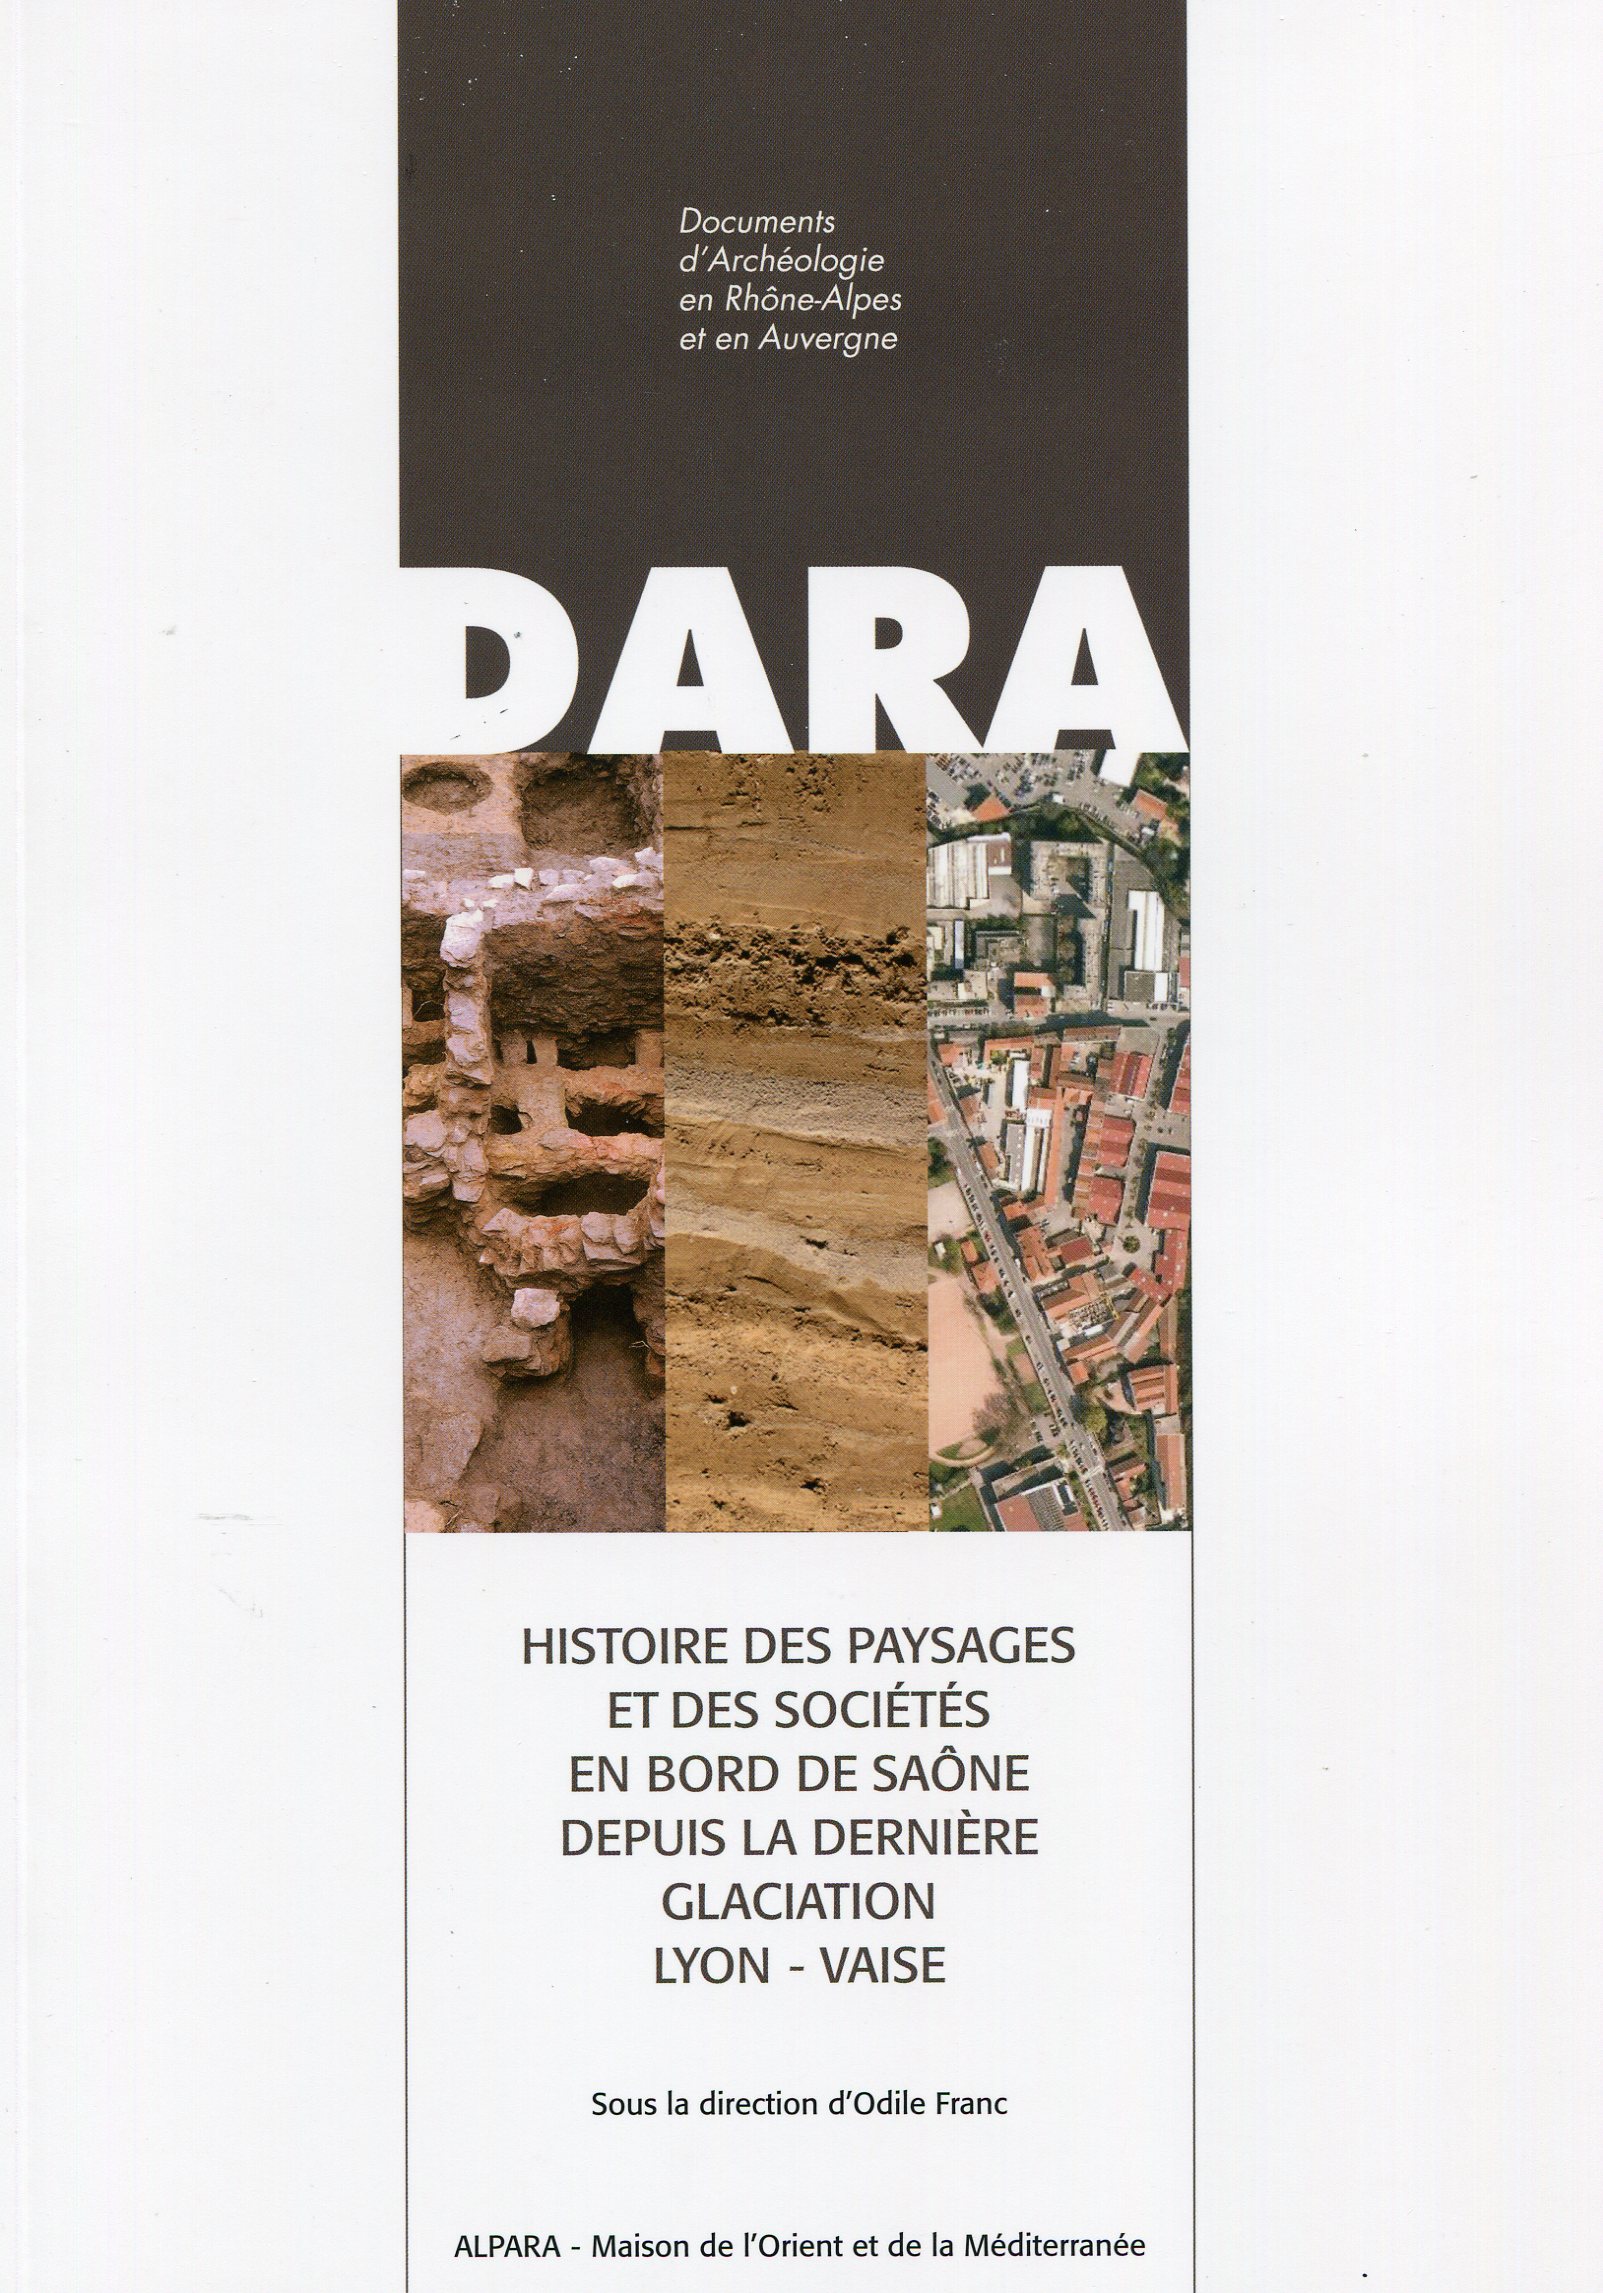 Histoire des paysages et des sociétés en bord de Saône depuis la dernière glaciation. Lyon-Vaise, (DARA 44), 2016, 224 p.